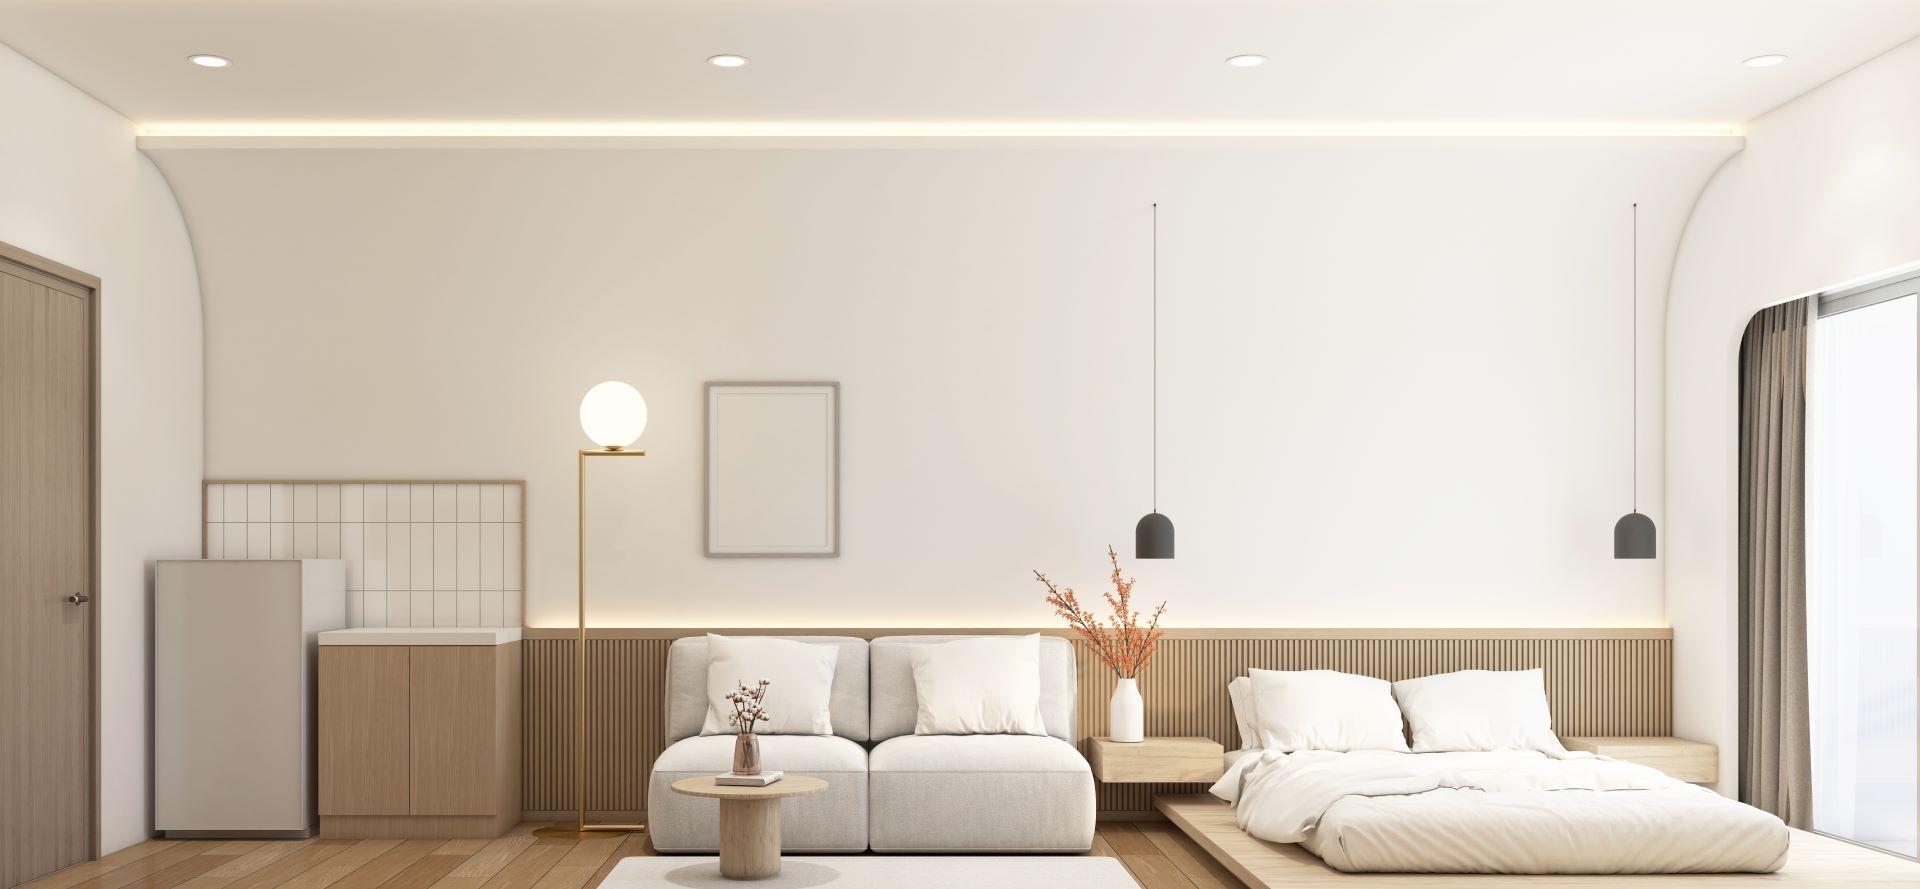 Modernes kleines Zimmer im japanischen Stil, dekoriert mit minimalistischem Sofa und weißem Bett, Vorratsschrank und Kühlschrank, Holzlattenwand und weißer gebogener Wand. 3d Rendering